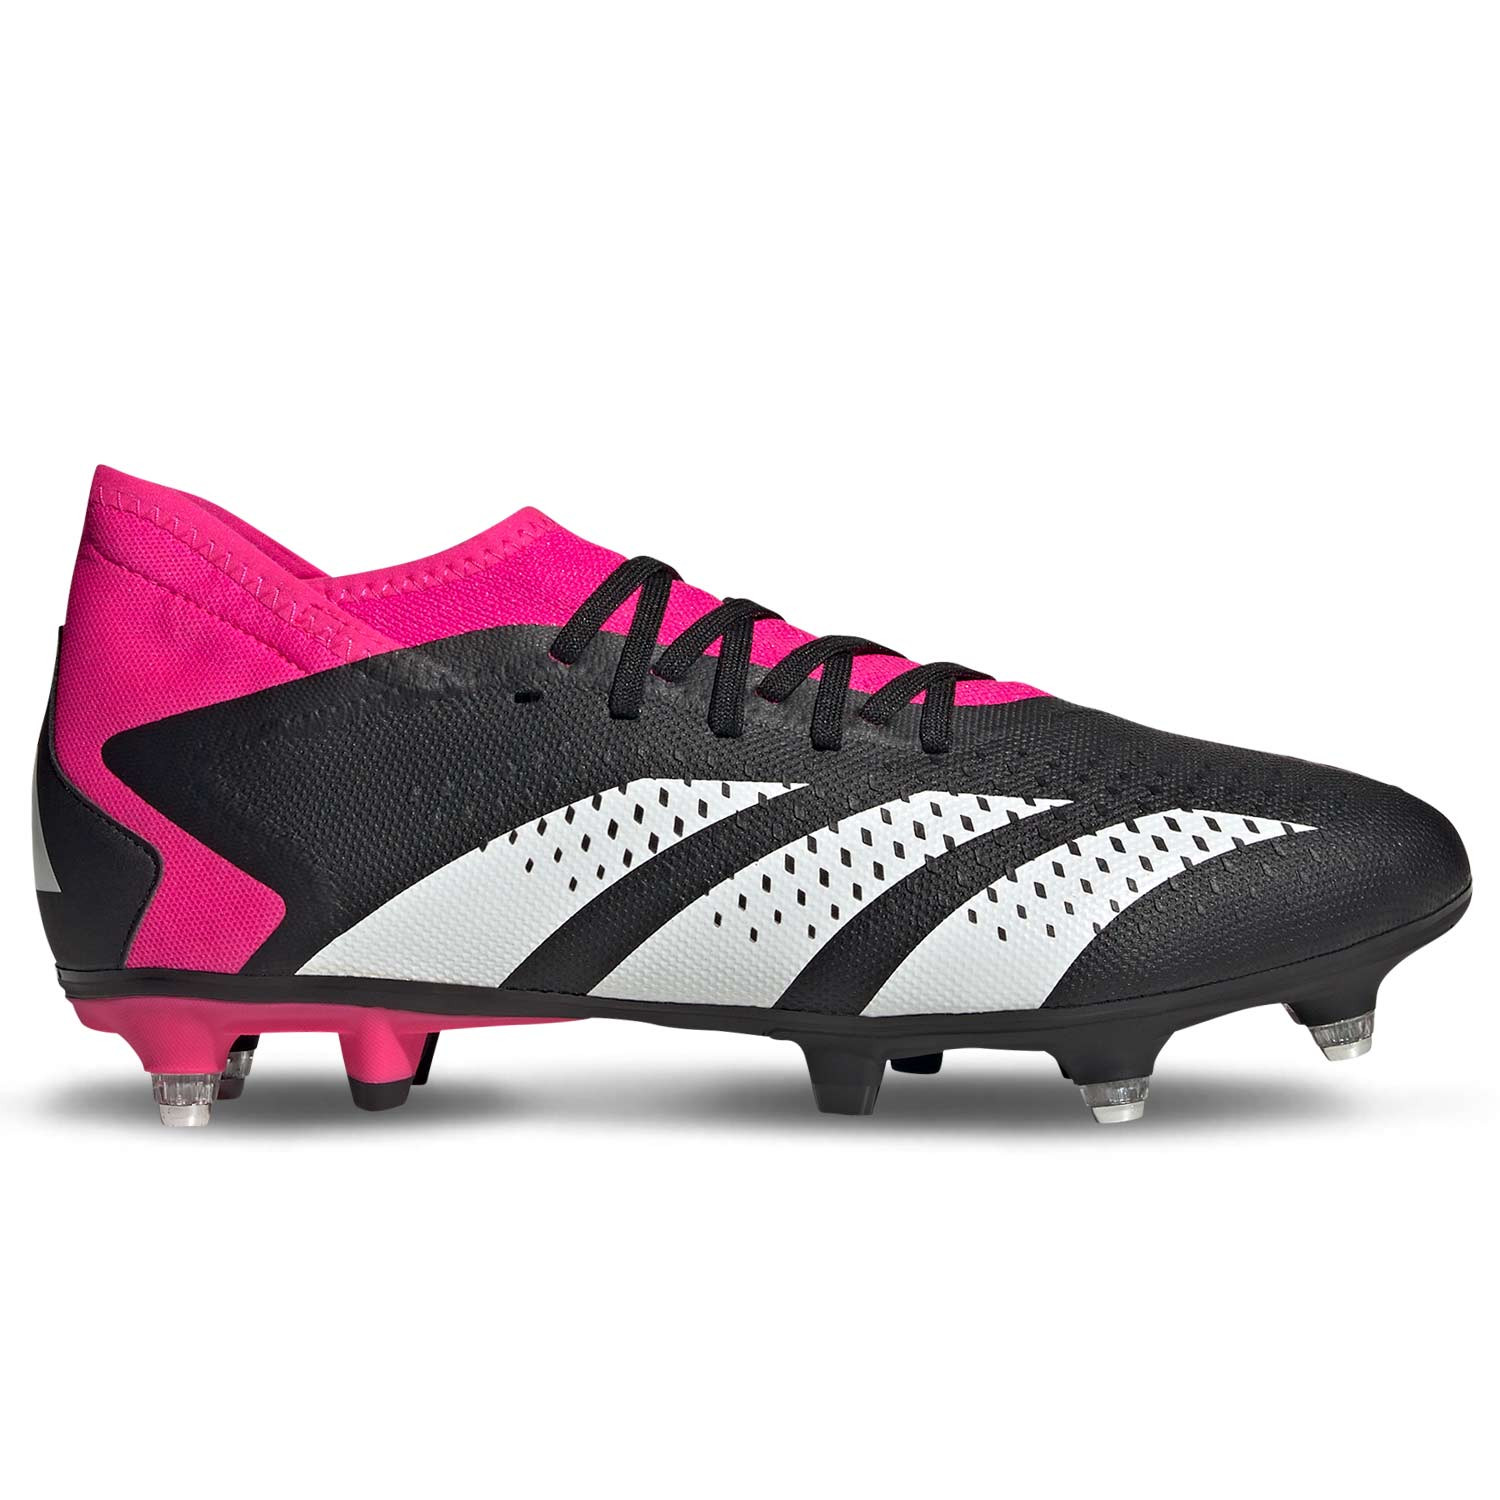 Botas fútbol adidas Predator SG negras rosas |